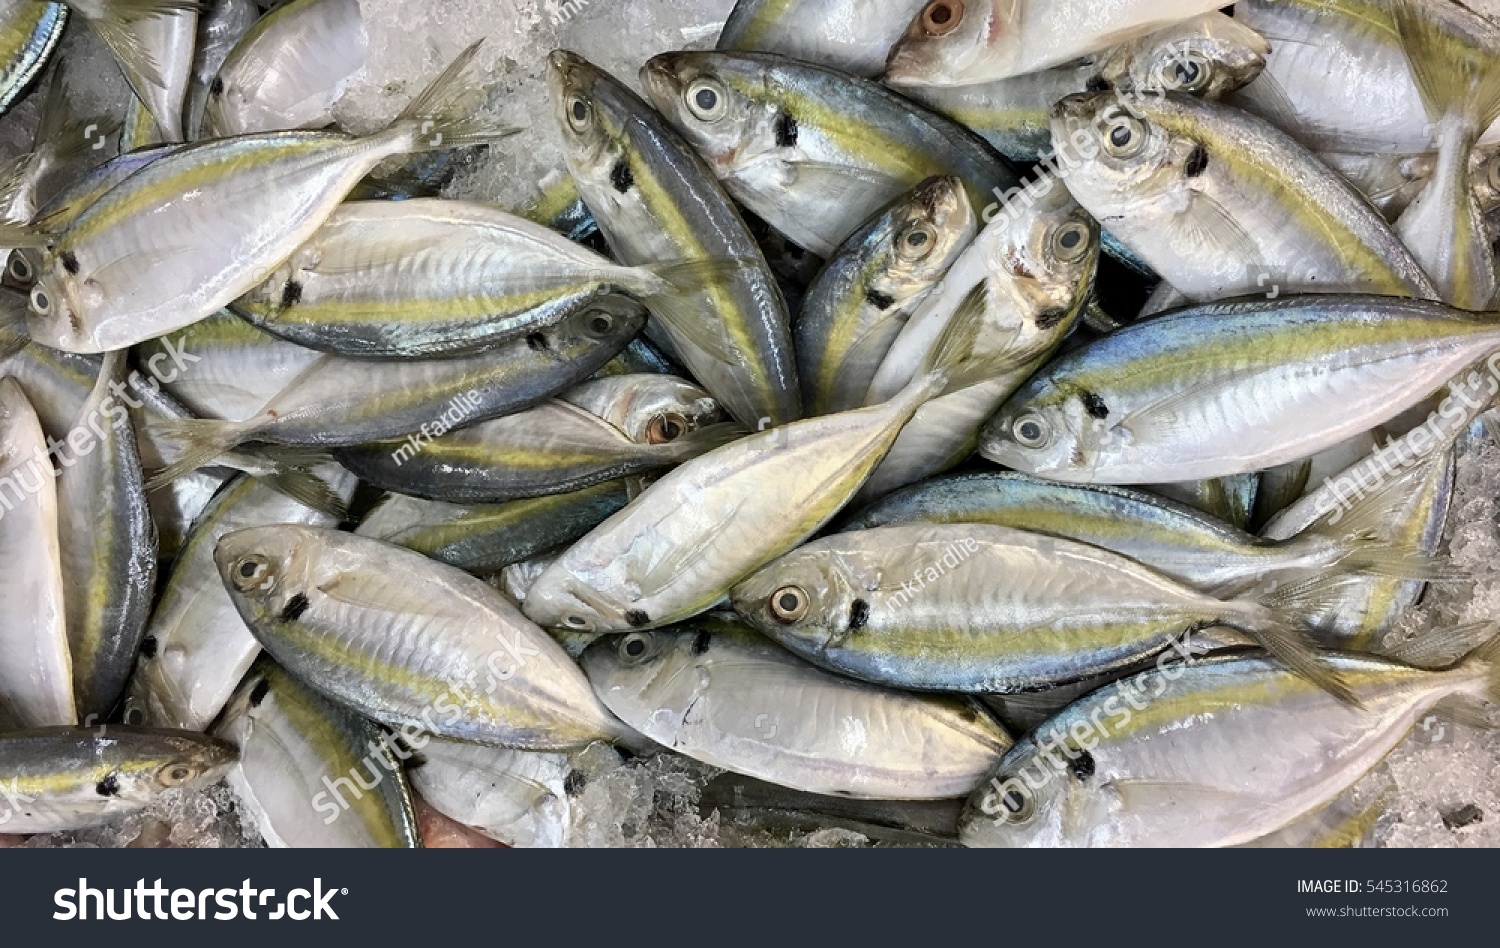 Ikan Selar in English